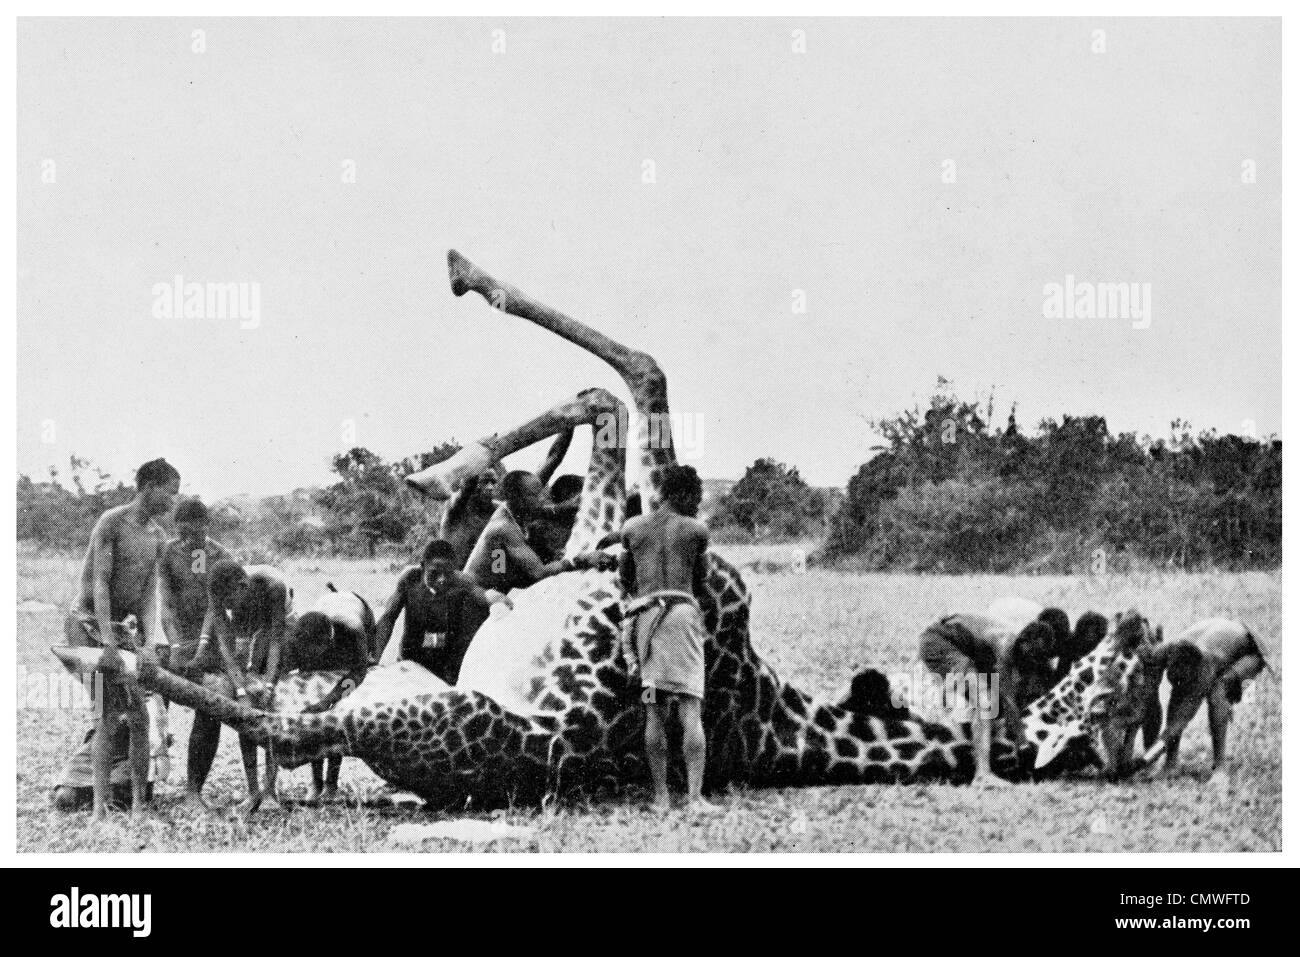 1925 éplucher un 19 pied girafe chasse chasse blood sport grand jeu cruel Giraffa camelopardalis Banque D'Images